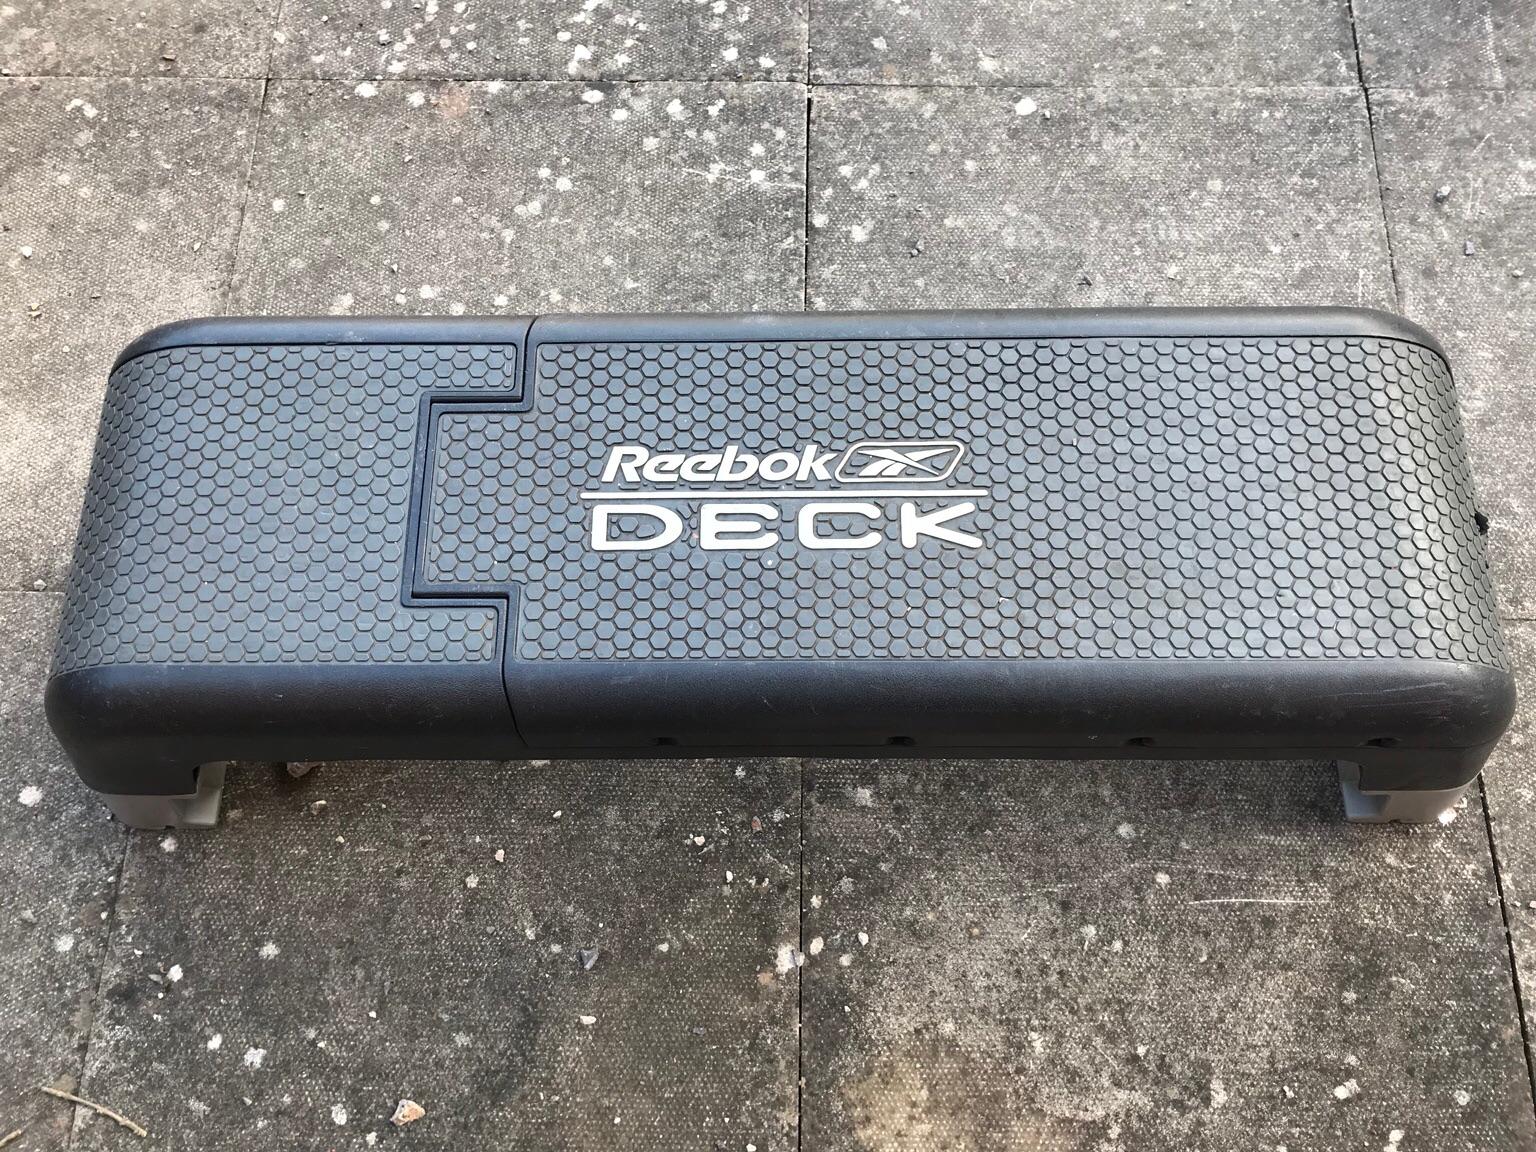 reebok deck second hand